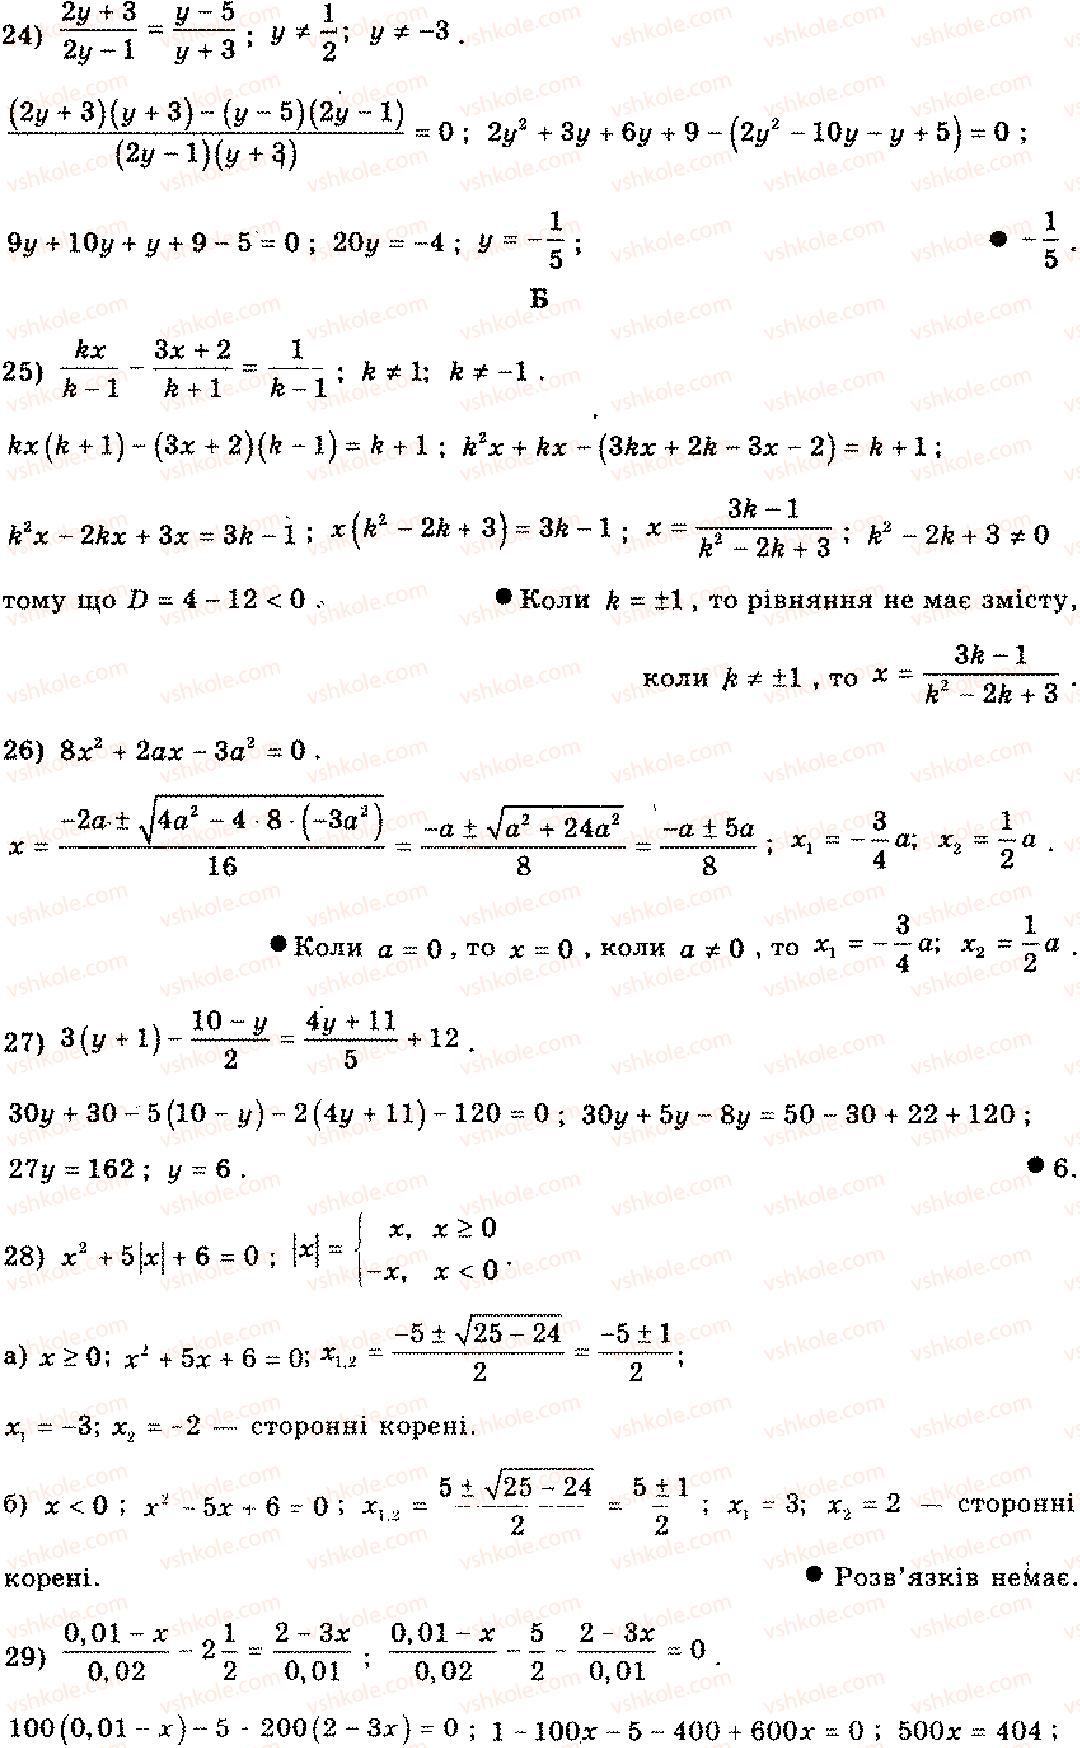 11-algebra-mi-shkil-zi-slepkan-os-dubinchuk-2006--rozdil-15-povtorennya-kursu-algebri-osnovnoyi-shkoli-3-1-rnd4536.jpg